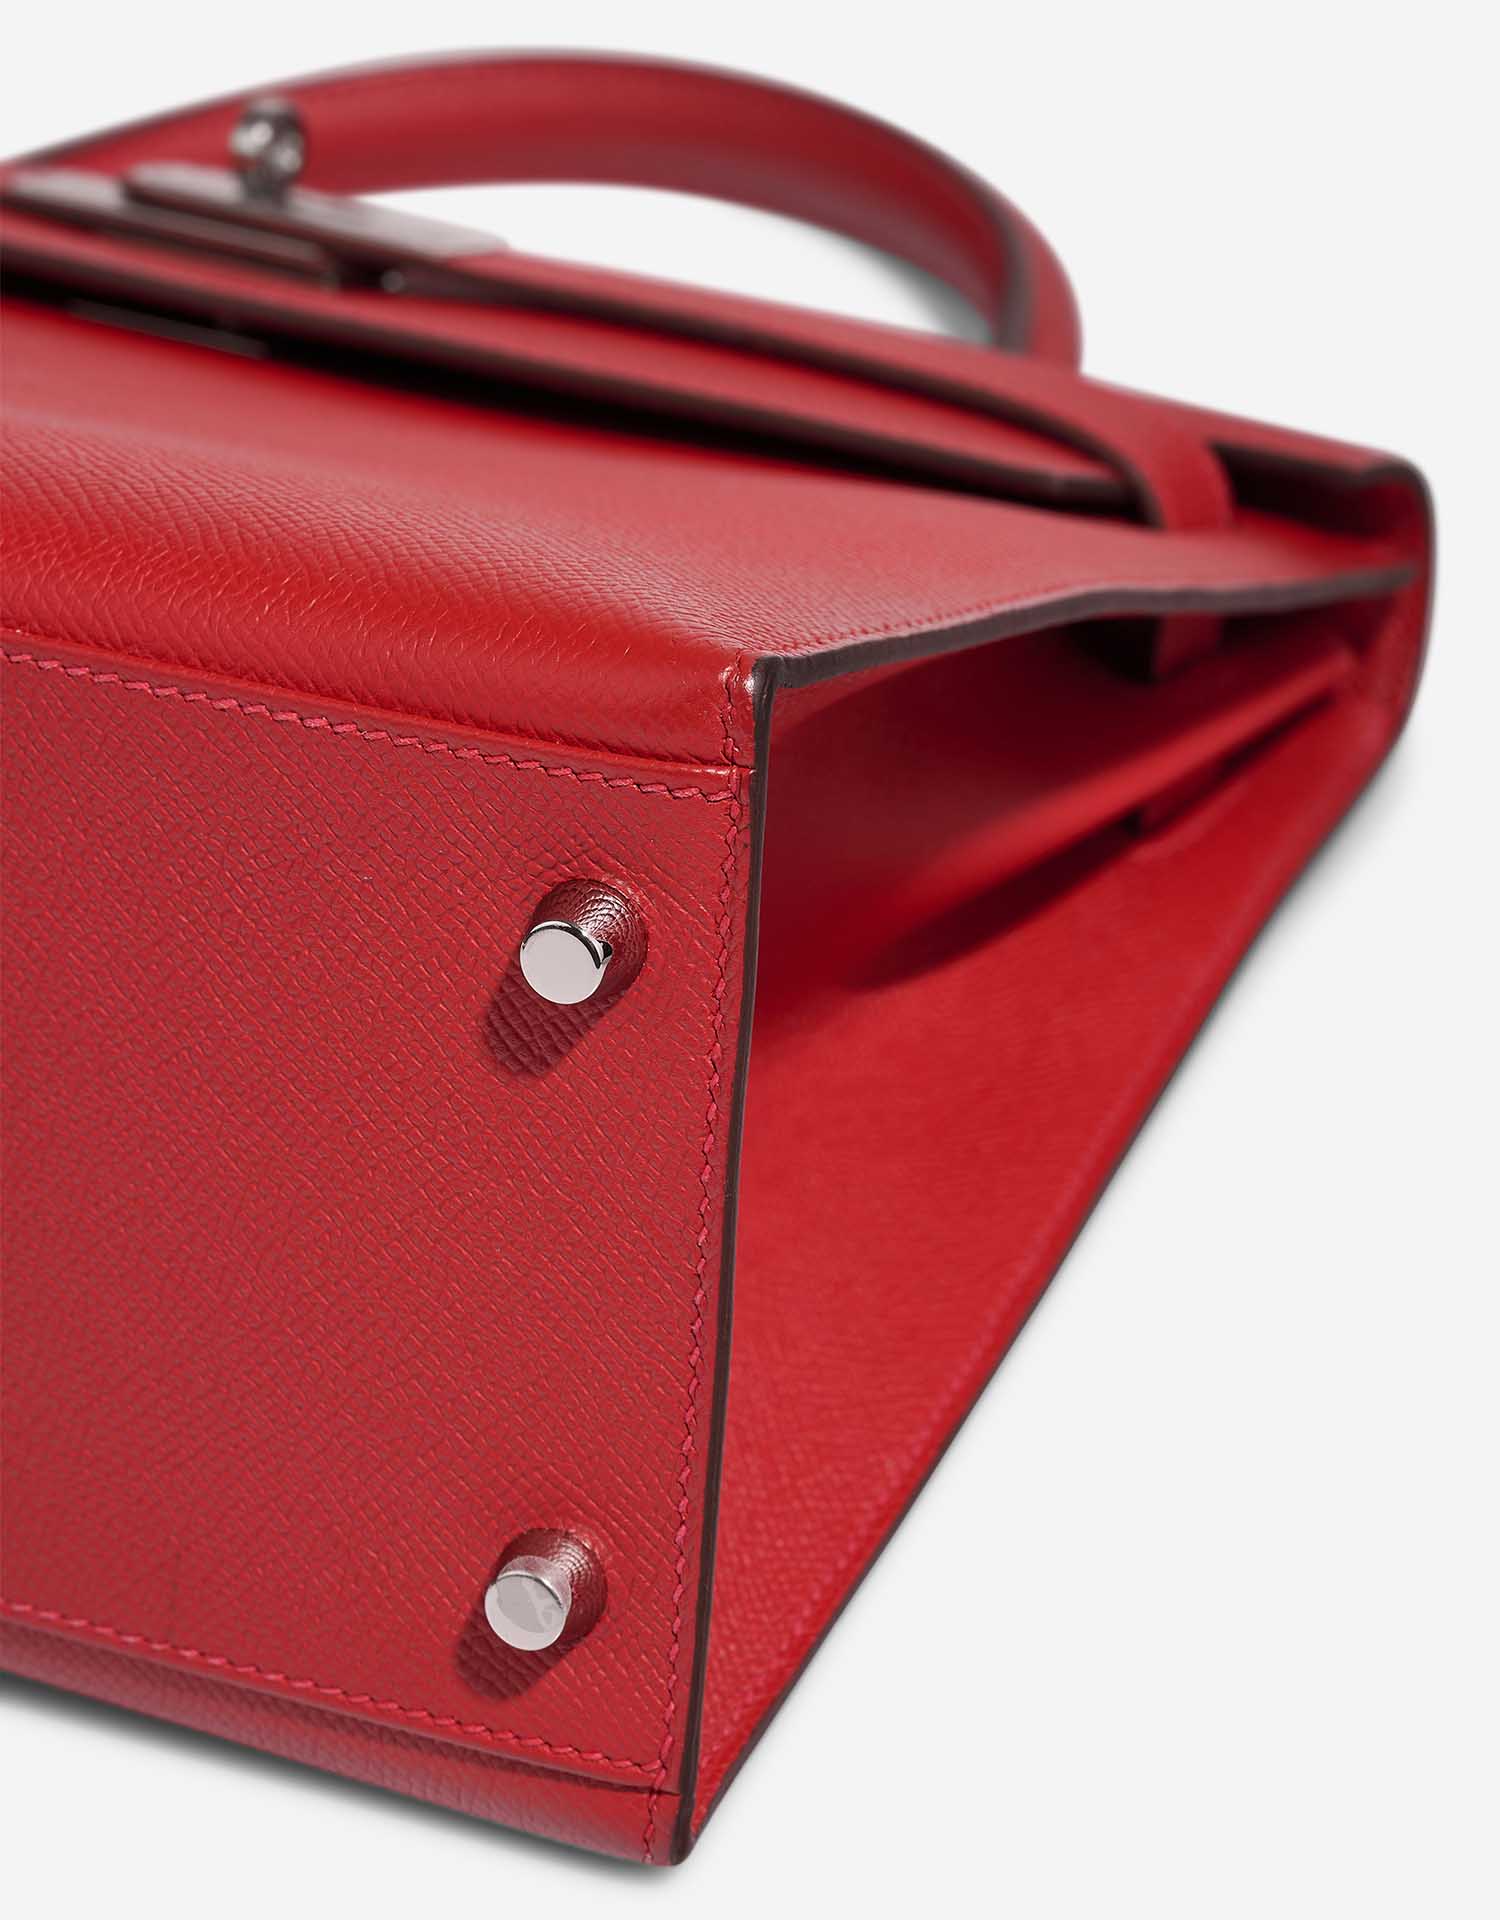 Hermès Kelly 32 RougeCasaque Gebrauchsspuren | Verkaufen Sie Ihre Designer-Tasche auf Saclab.com